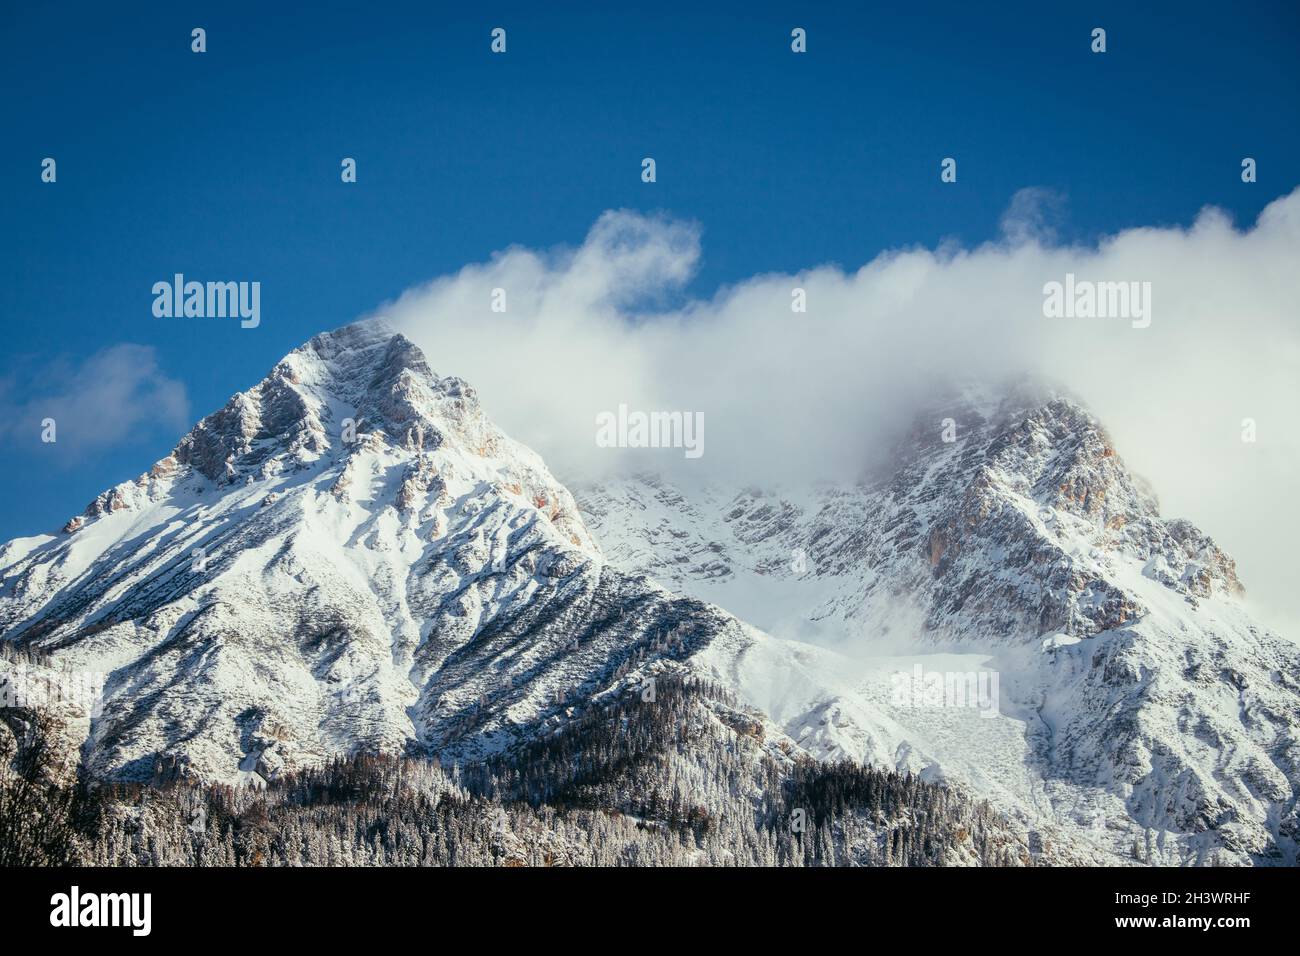 Epische Snowy Mountain Peak mit Wolken im Winter, Landschaft, Alpen, Österreich Stockfoto